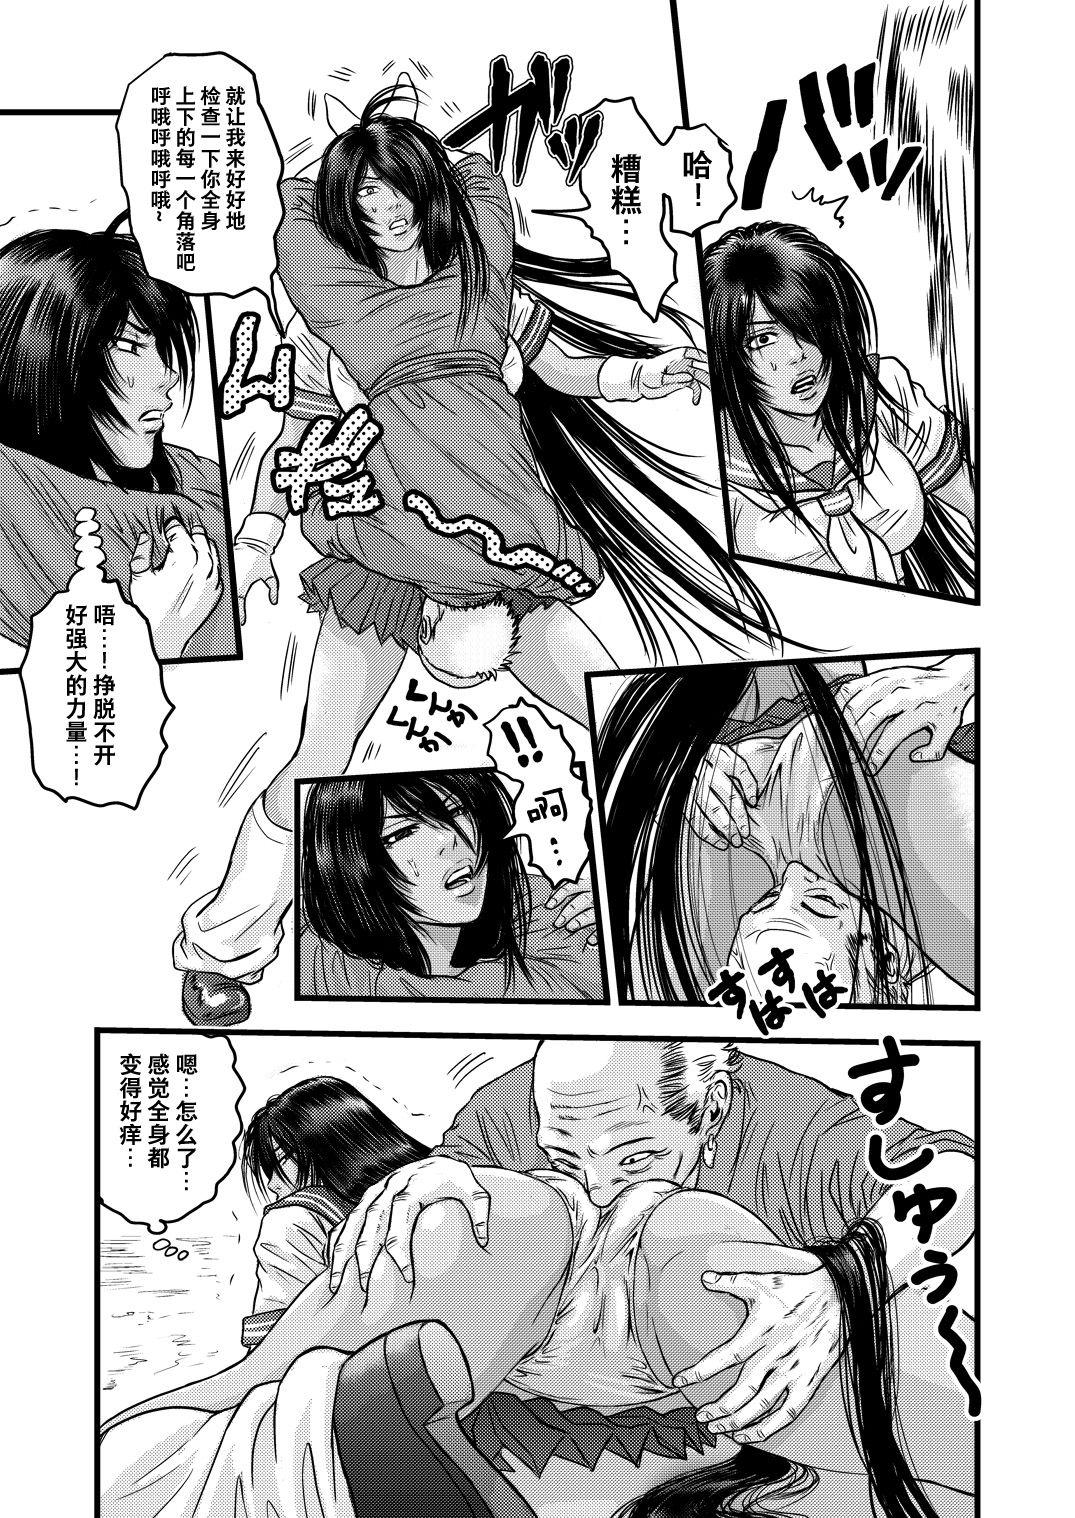 Chubby 黒髪の不覚 其の一 - Ikkitousen | battle vixens Erotica - Page 8